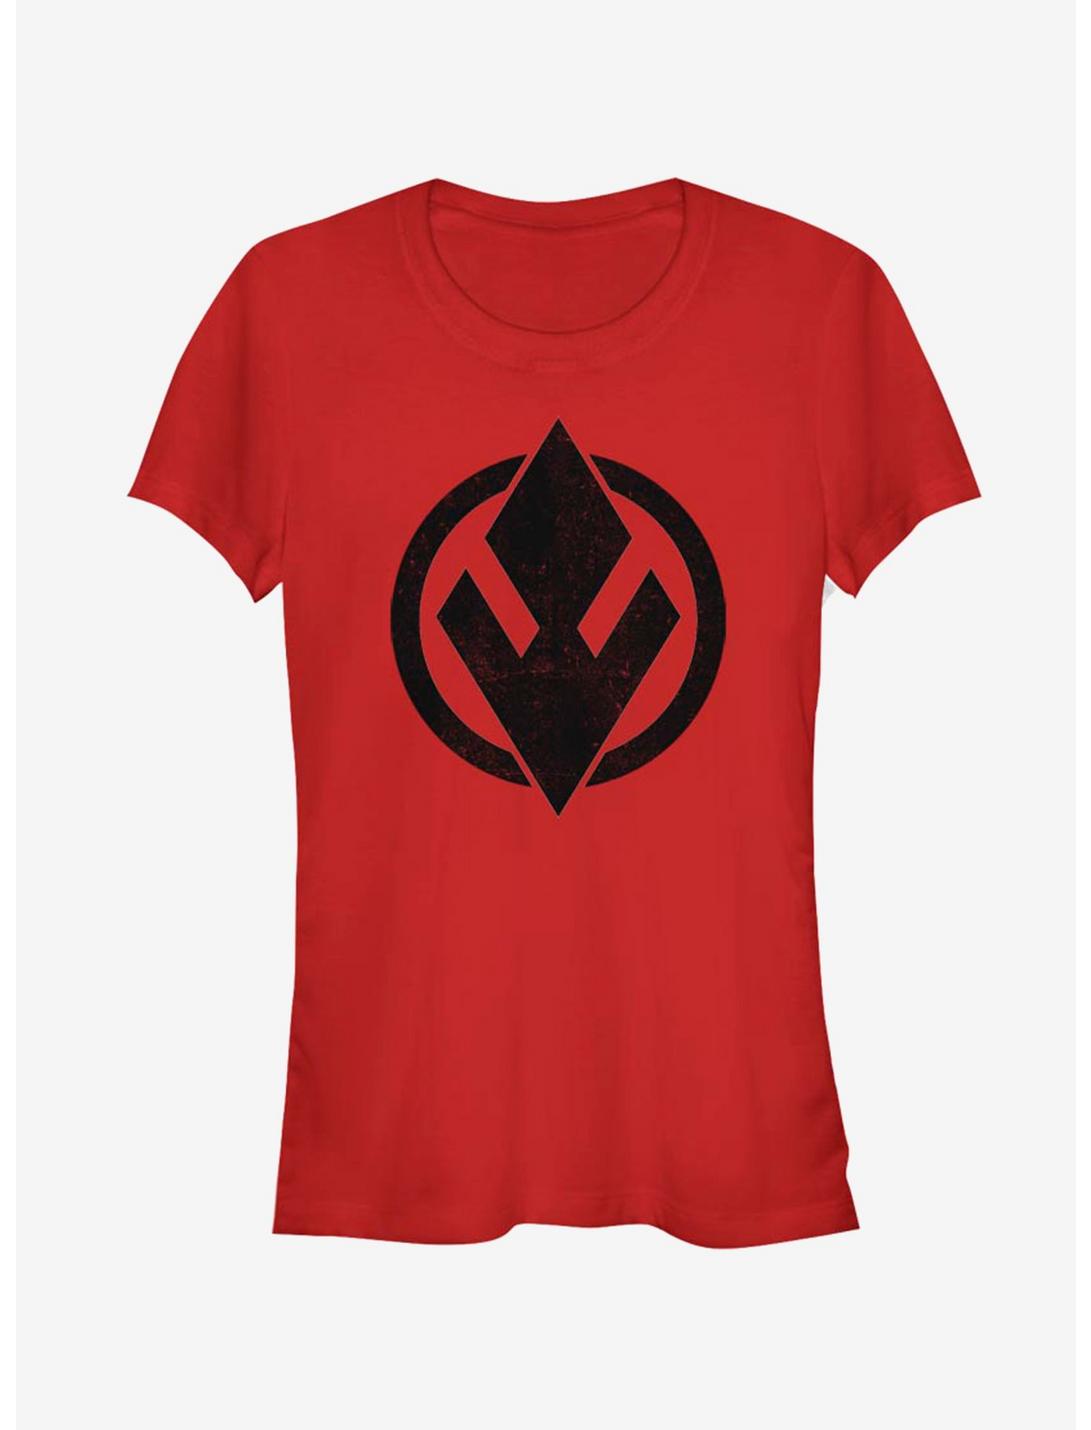 Star Wars Episode IX Rise of Skywalker Red Trooper SithTrooper Solid Emblem Girls T-Shirt, RED, hi-res